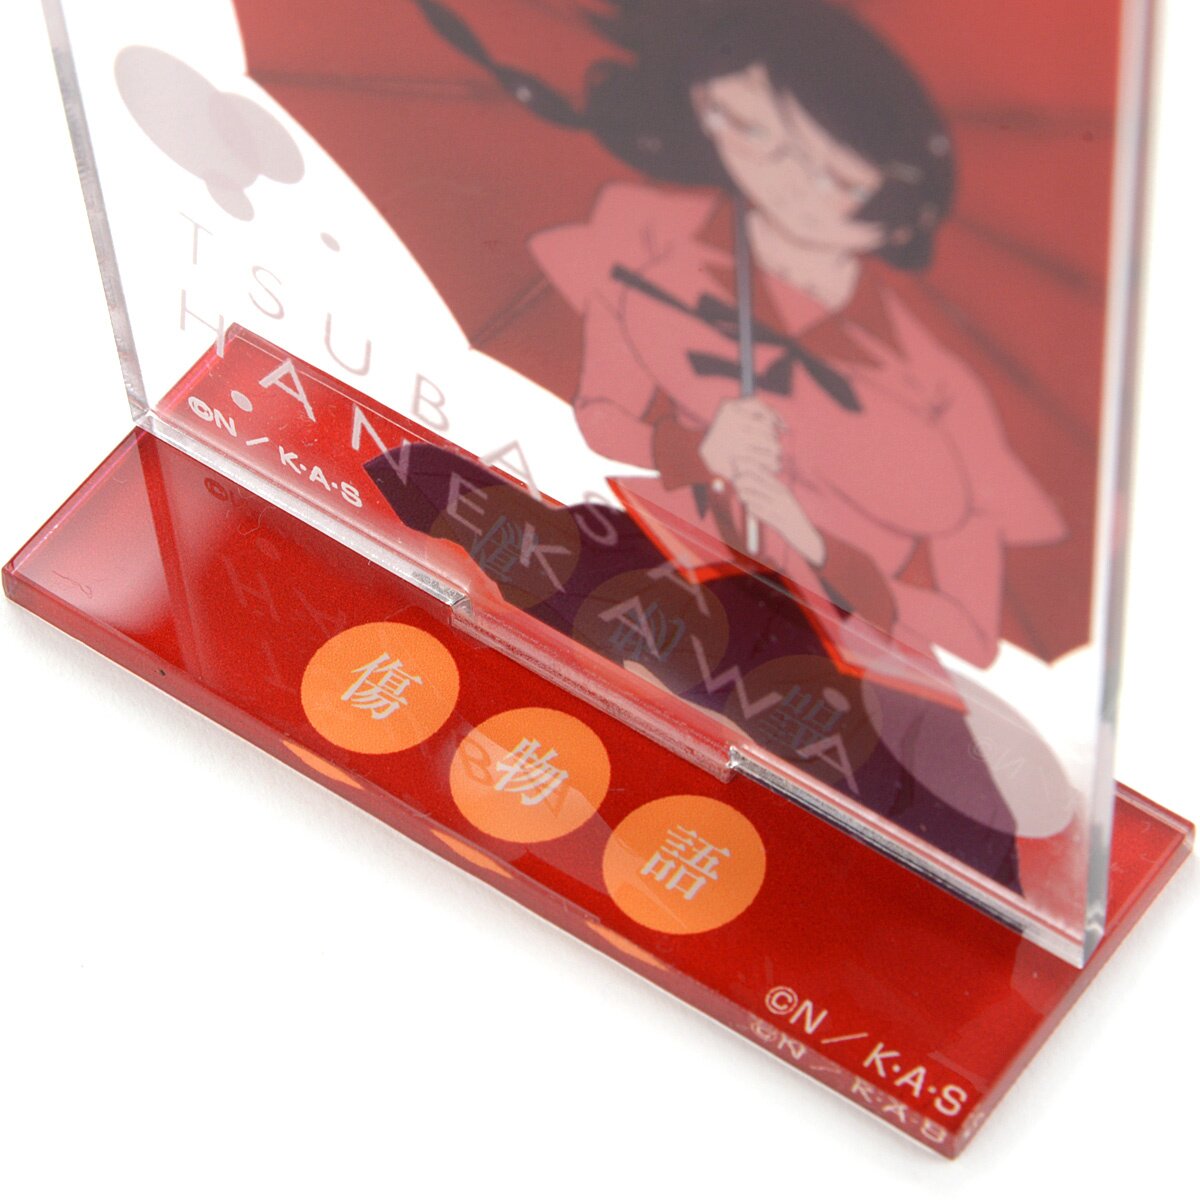  Kizumonogatari: Reiketsu Blu-ray Standard Edition